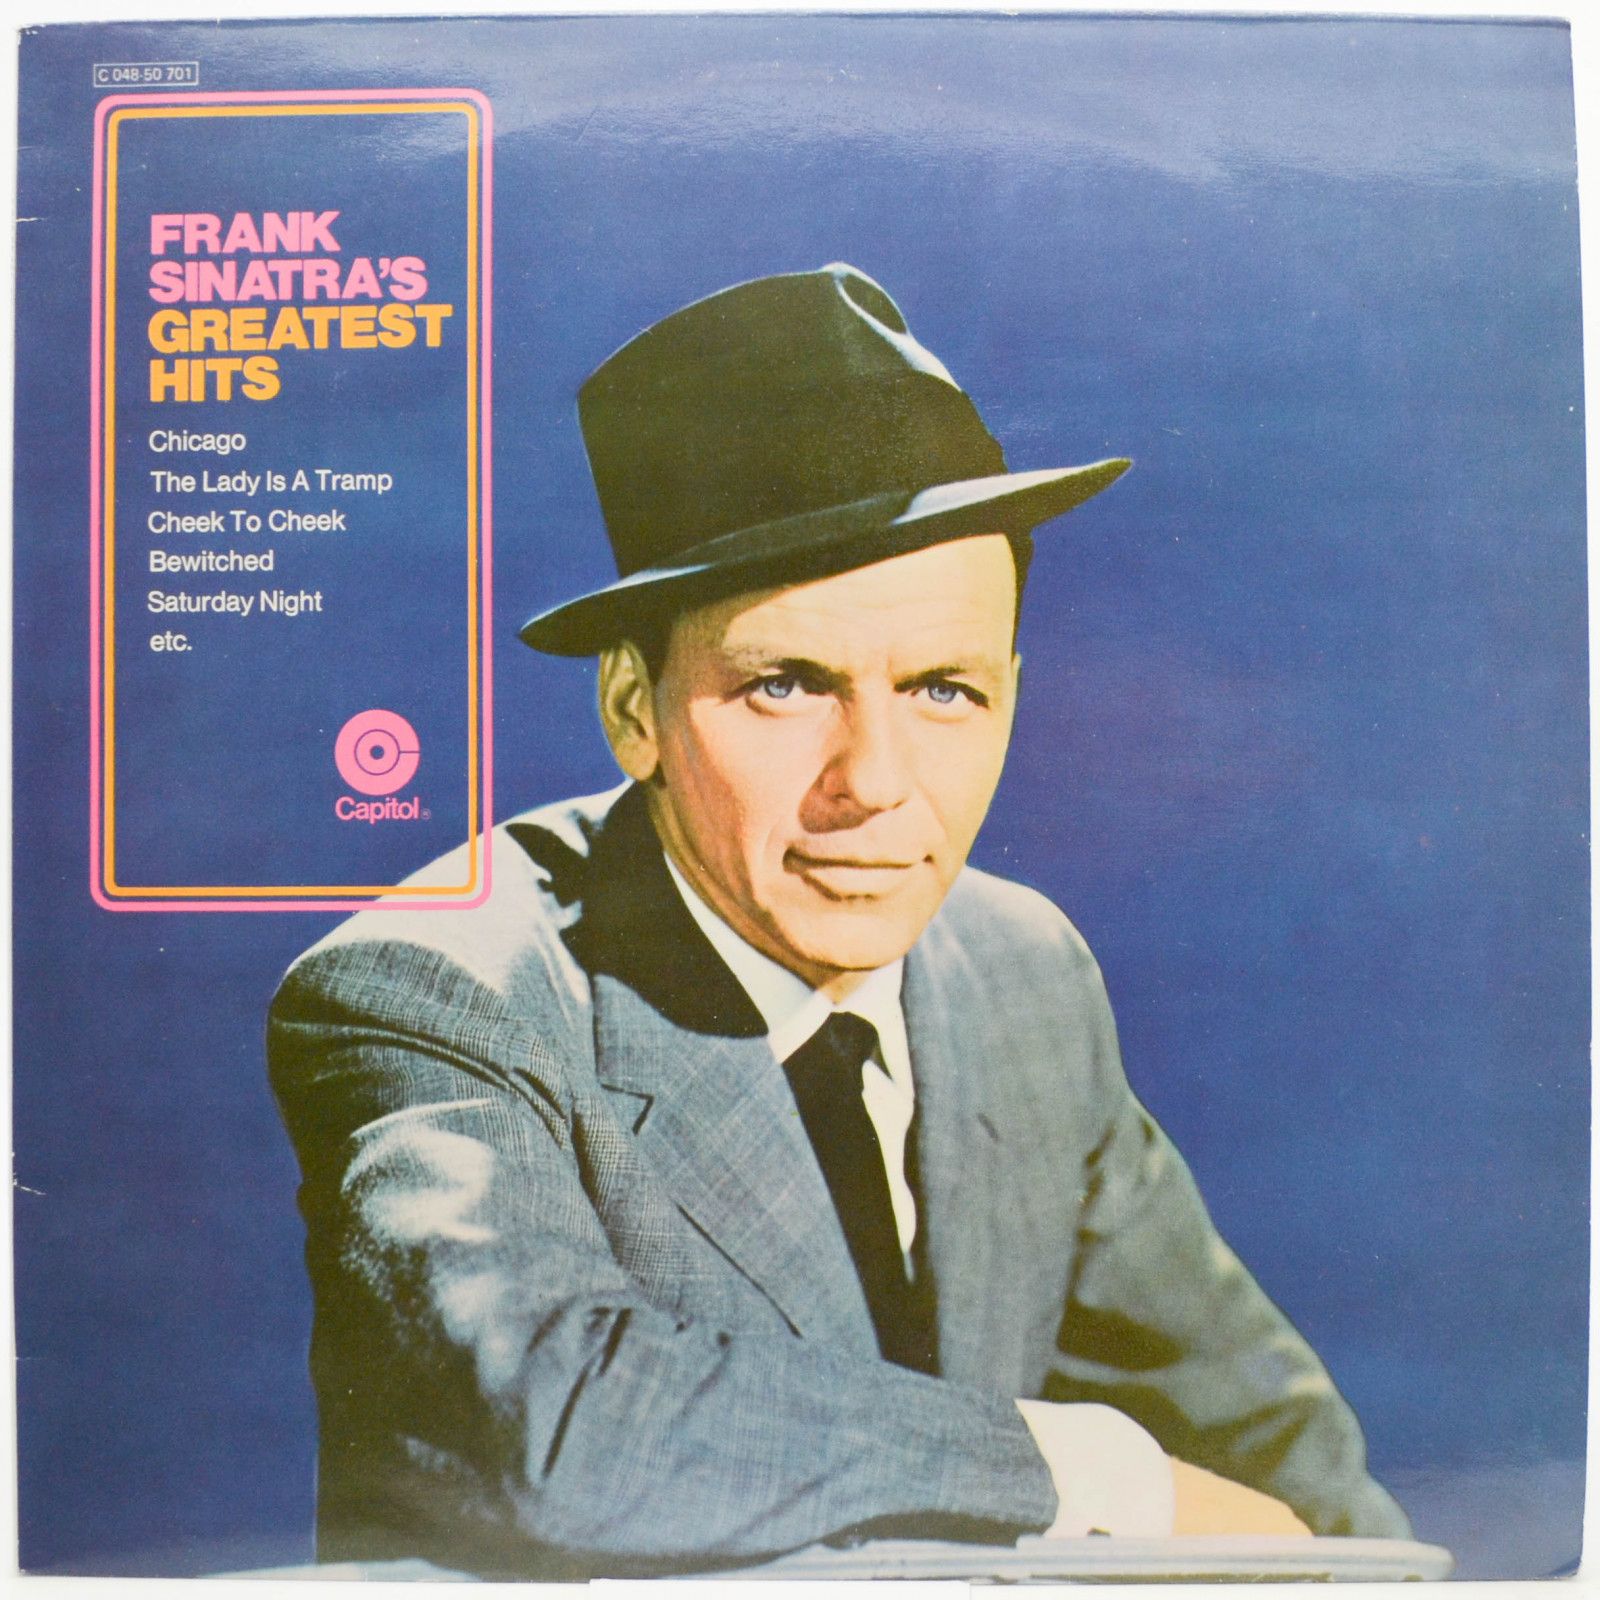 Frank Sinatra — Frank Sinatra's Greatest Hits, 1970